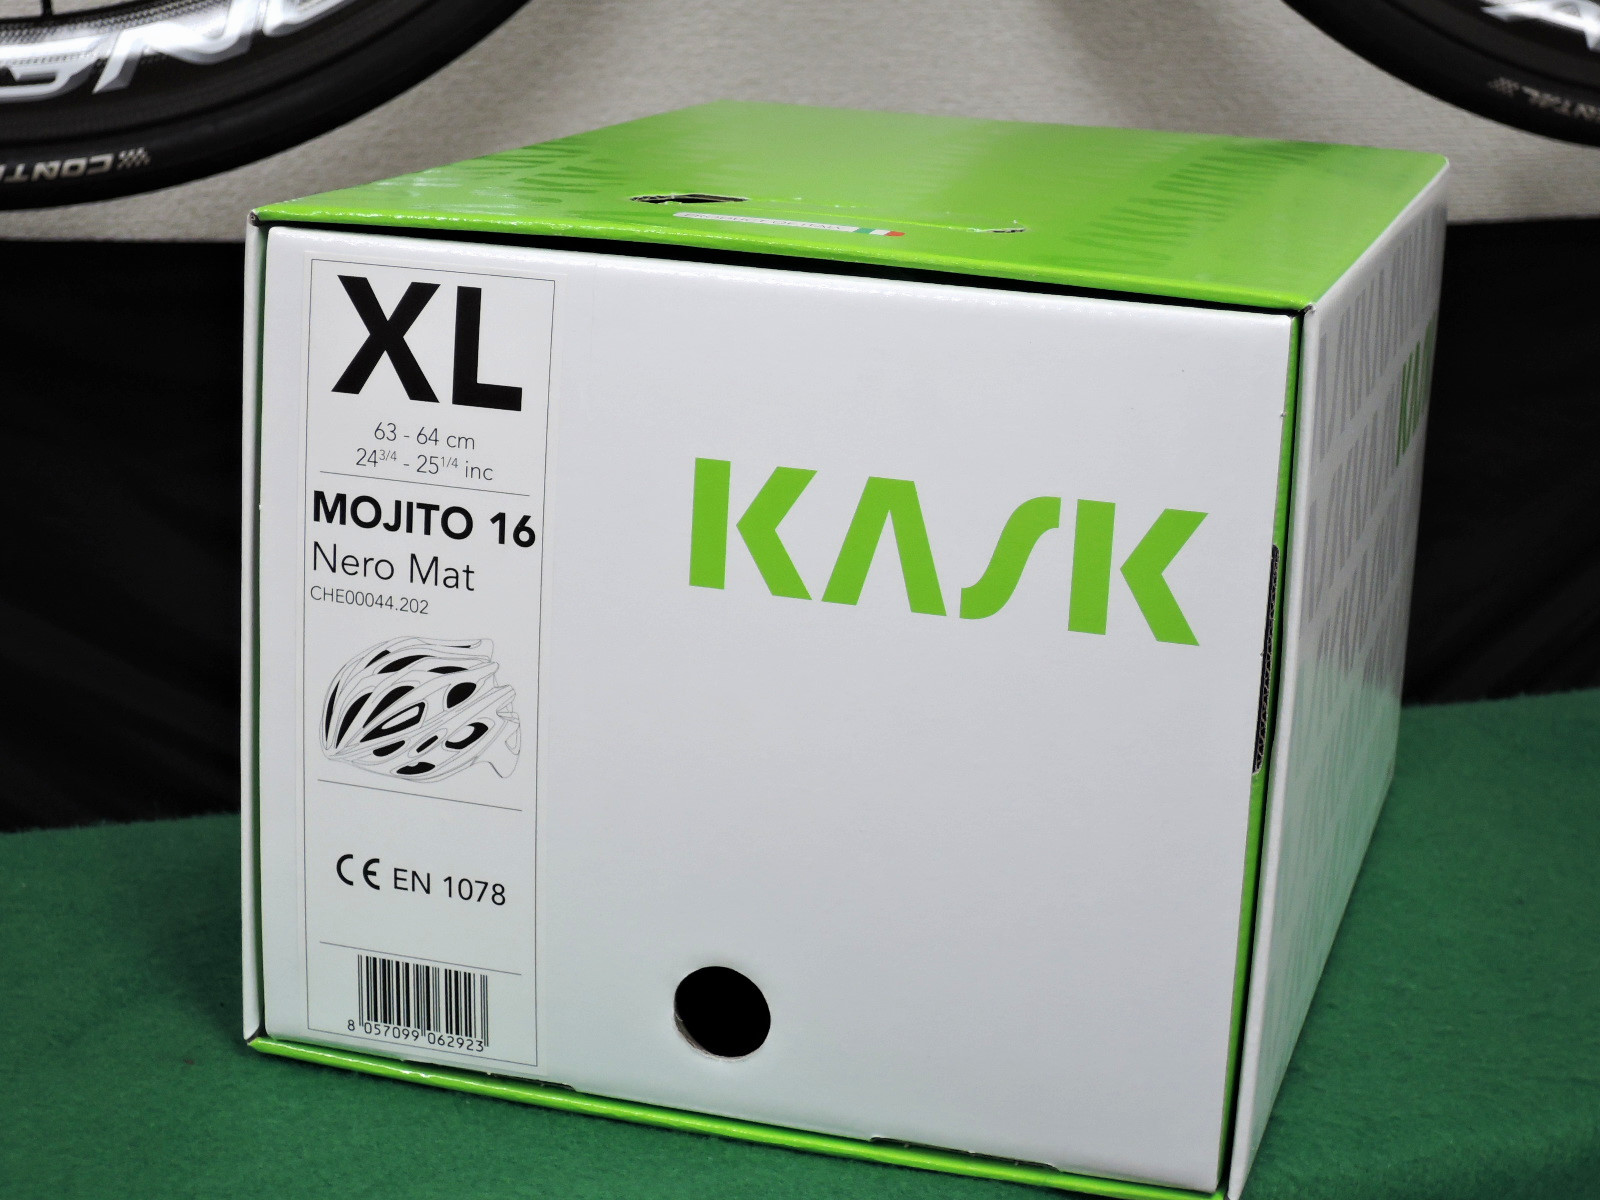 KASK Mojito マットブラック（XL）の外箱